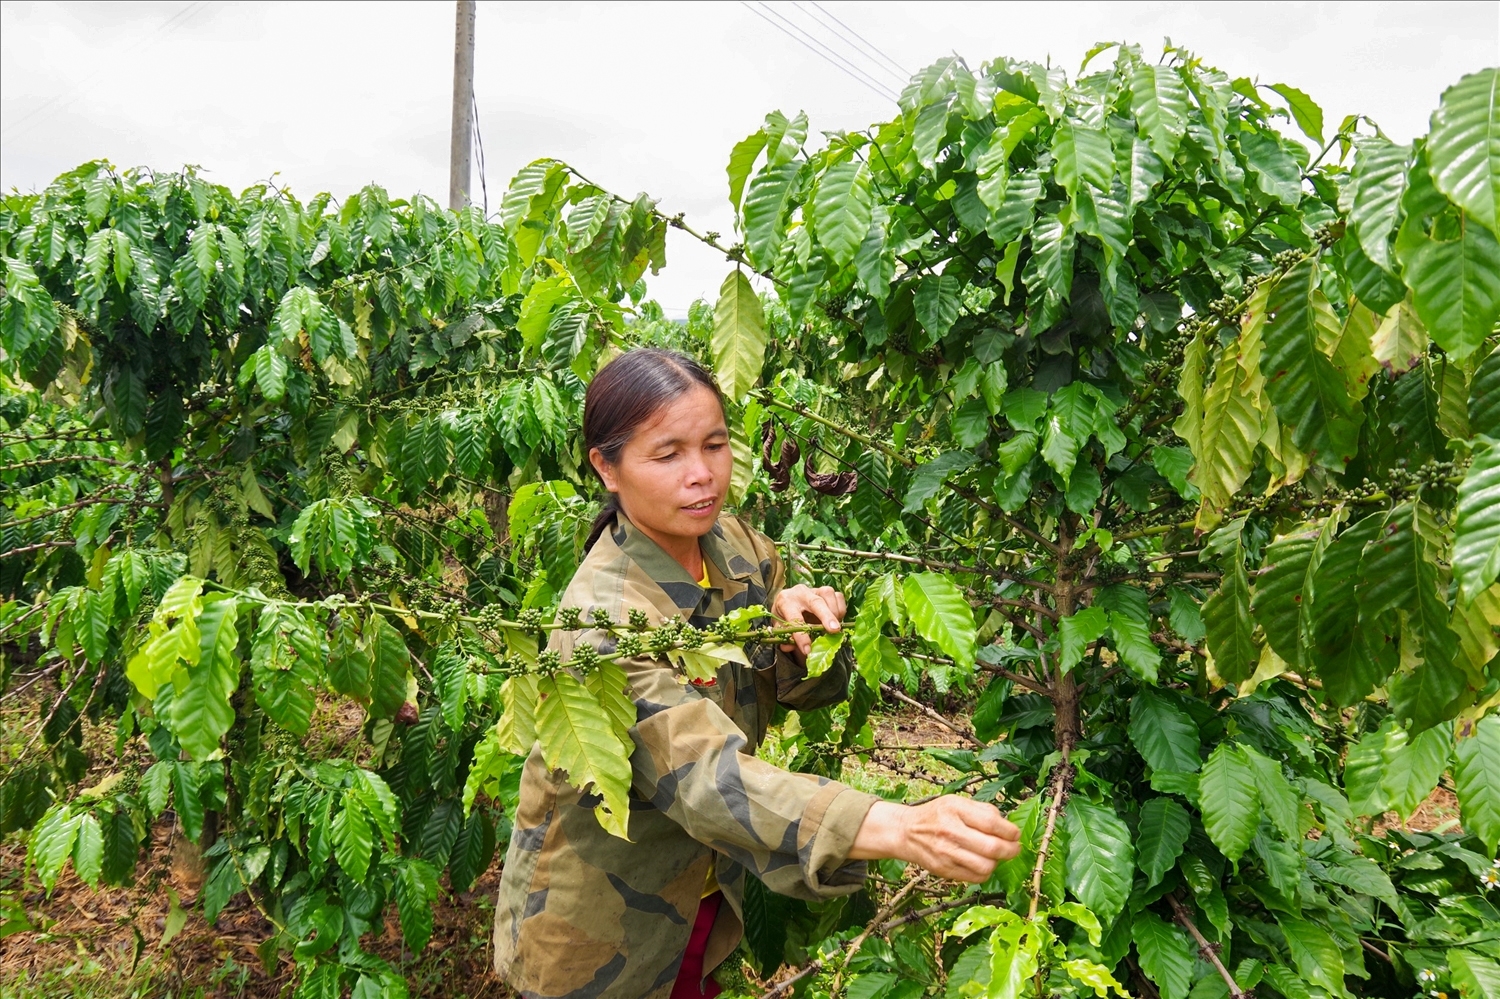 Thực hiện Đề án phát triển KT - XH dân tộc Brâu theo Quyết định 2086/QĐ-TTg, tỉnh Kon Tum đã hỗ trợ 36.942 cây giống cà phê, 2.916 cây ăn quả, hỗ trợ 18.155,5 kg phân bón vật tư, 231,07 kg thuốc bảo vệ thực vật… cho đồng bào dân tộc Brâu ở thôn Đăk Mế. (Ảnh: Thy Thảo)